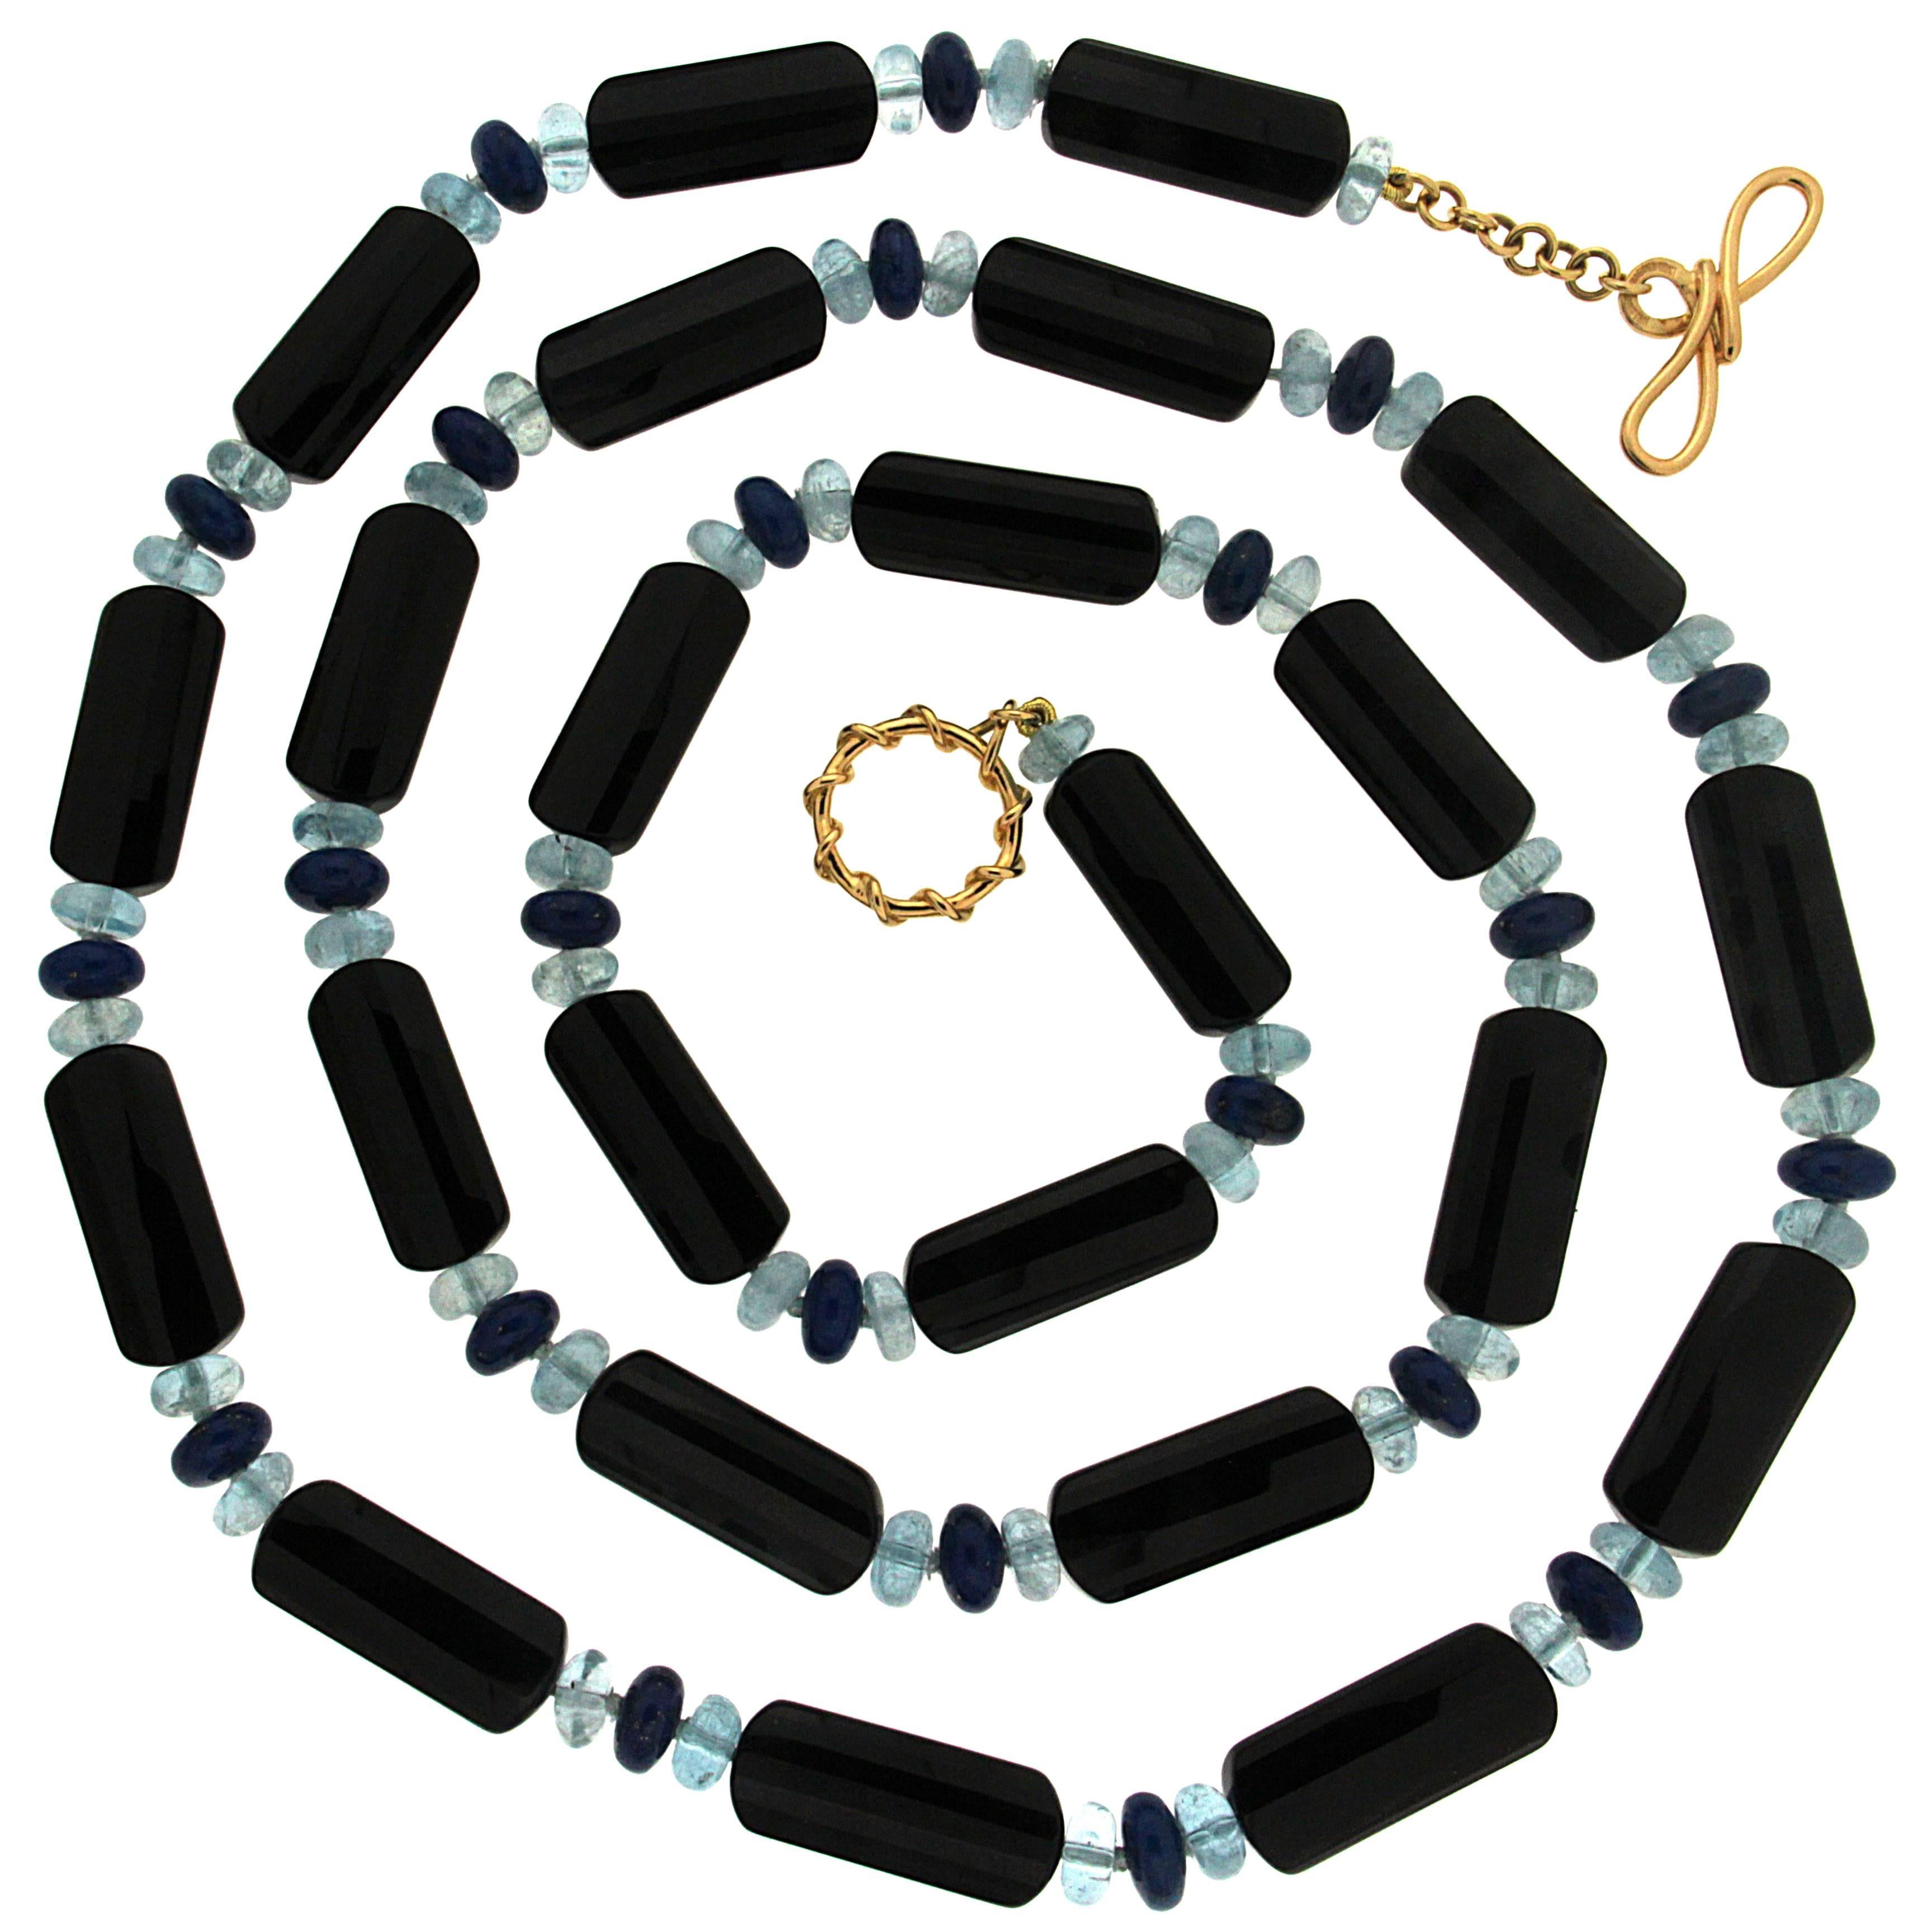 Onyx Tube and Aquamarine Lapis Roundels Necklace